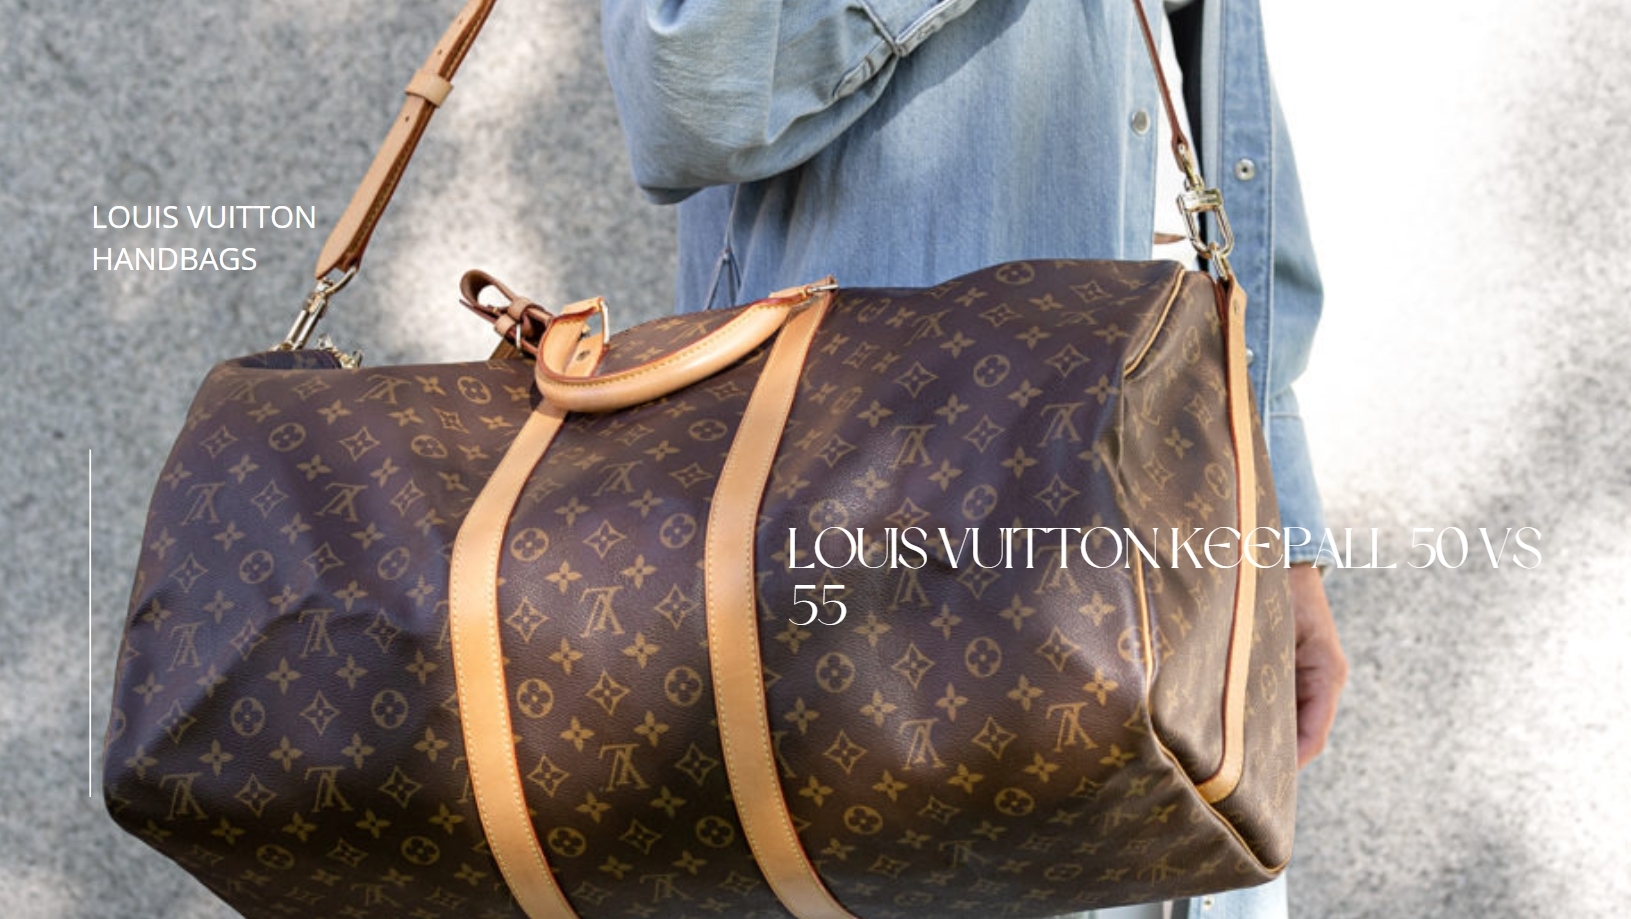 TOUR - Louis Vuitton Keepall 45, 50, 55 & 60 Size Comparison 